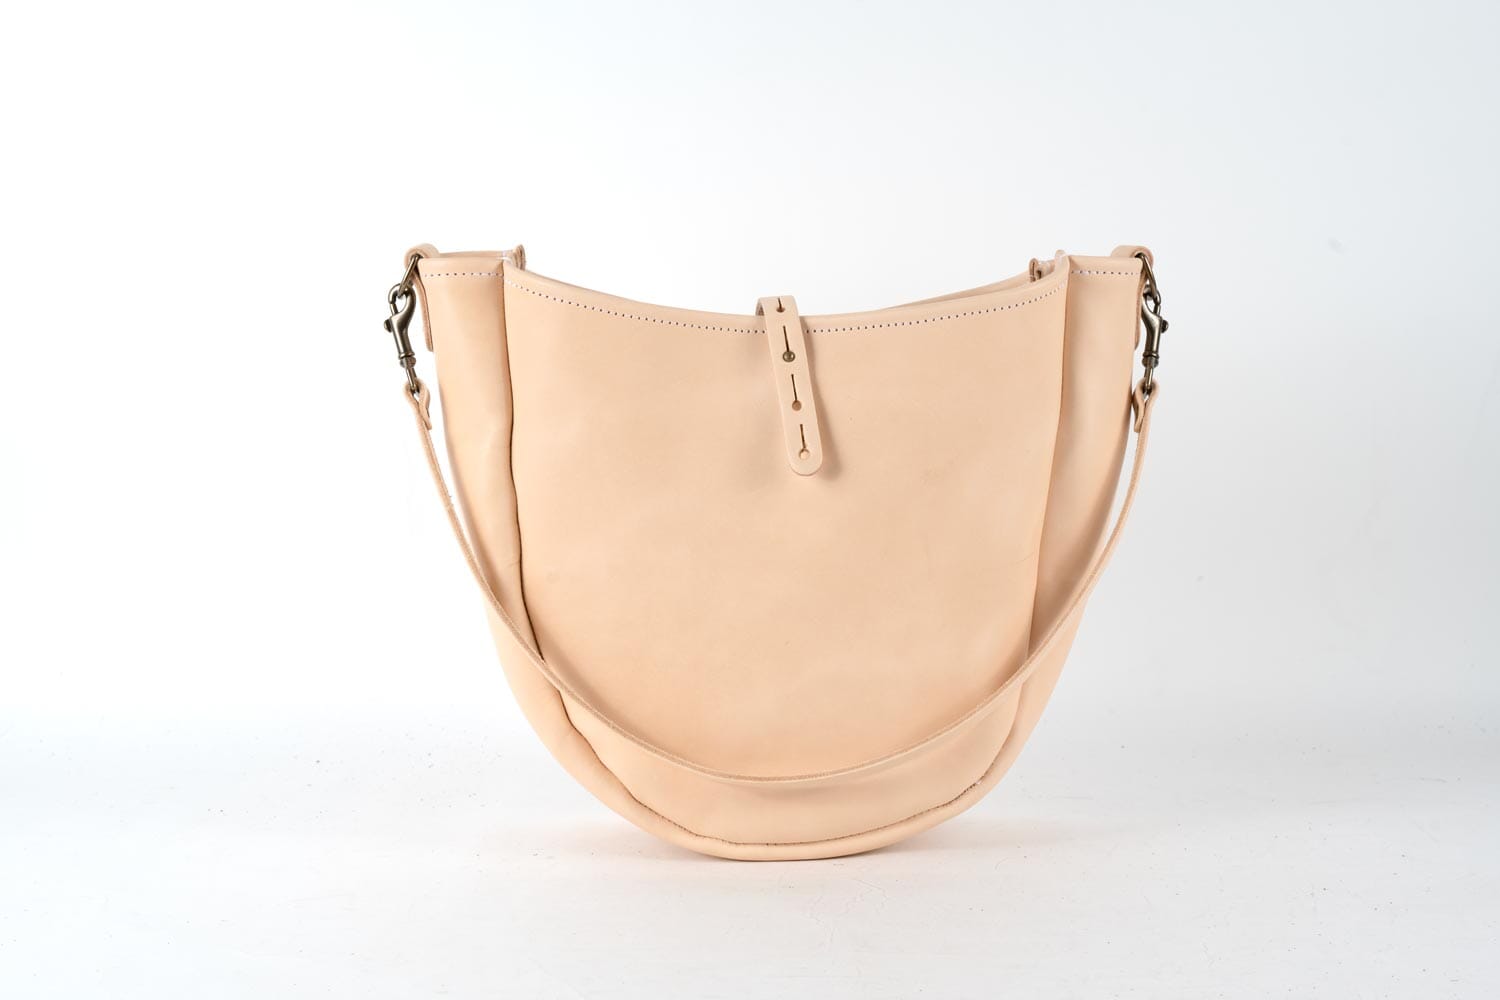 Celeste Leather Hobo Bag - Medium - Natural Veg Tan